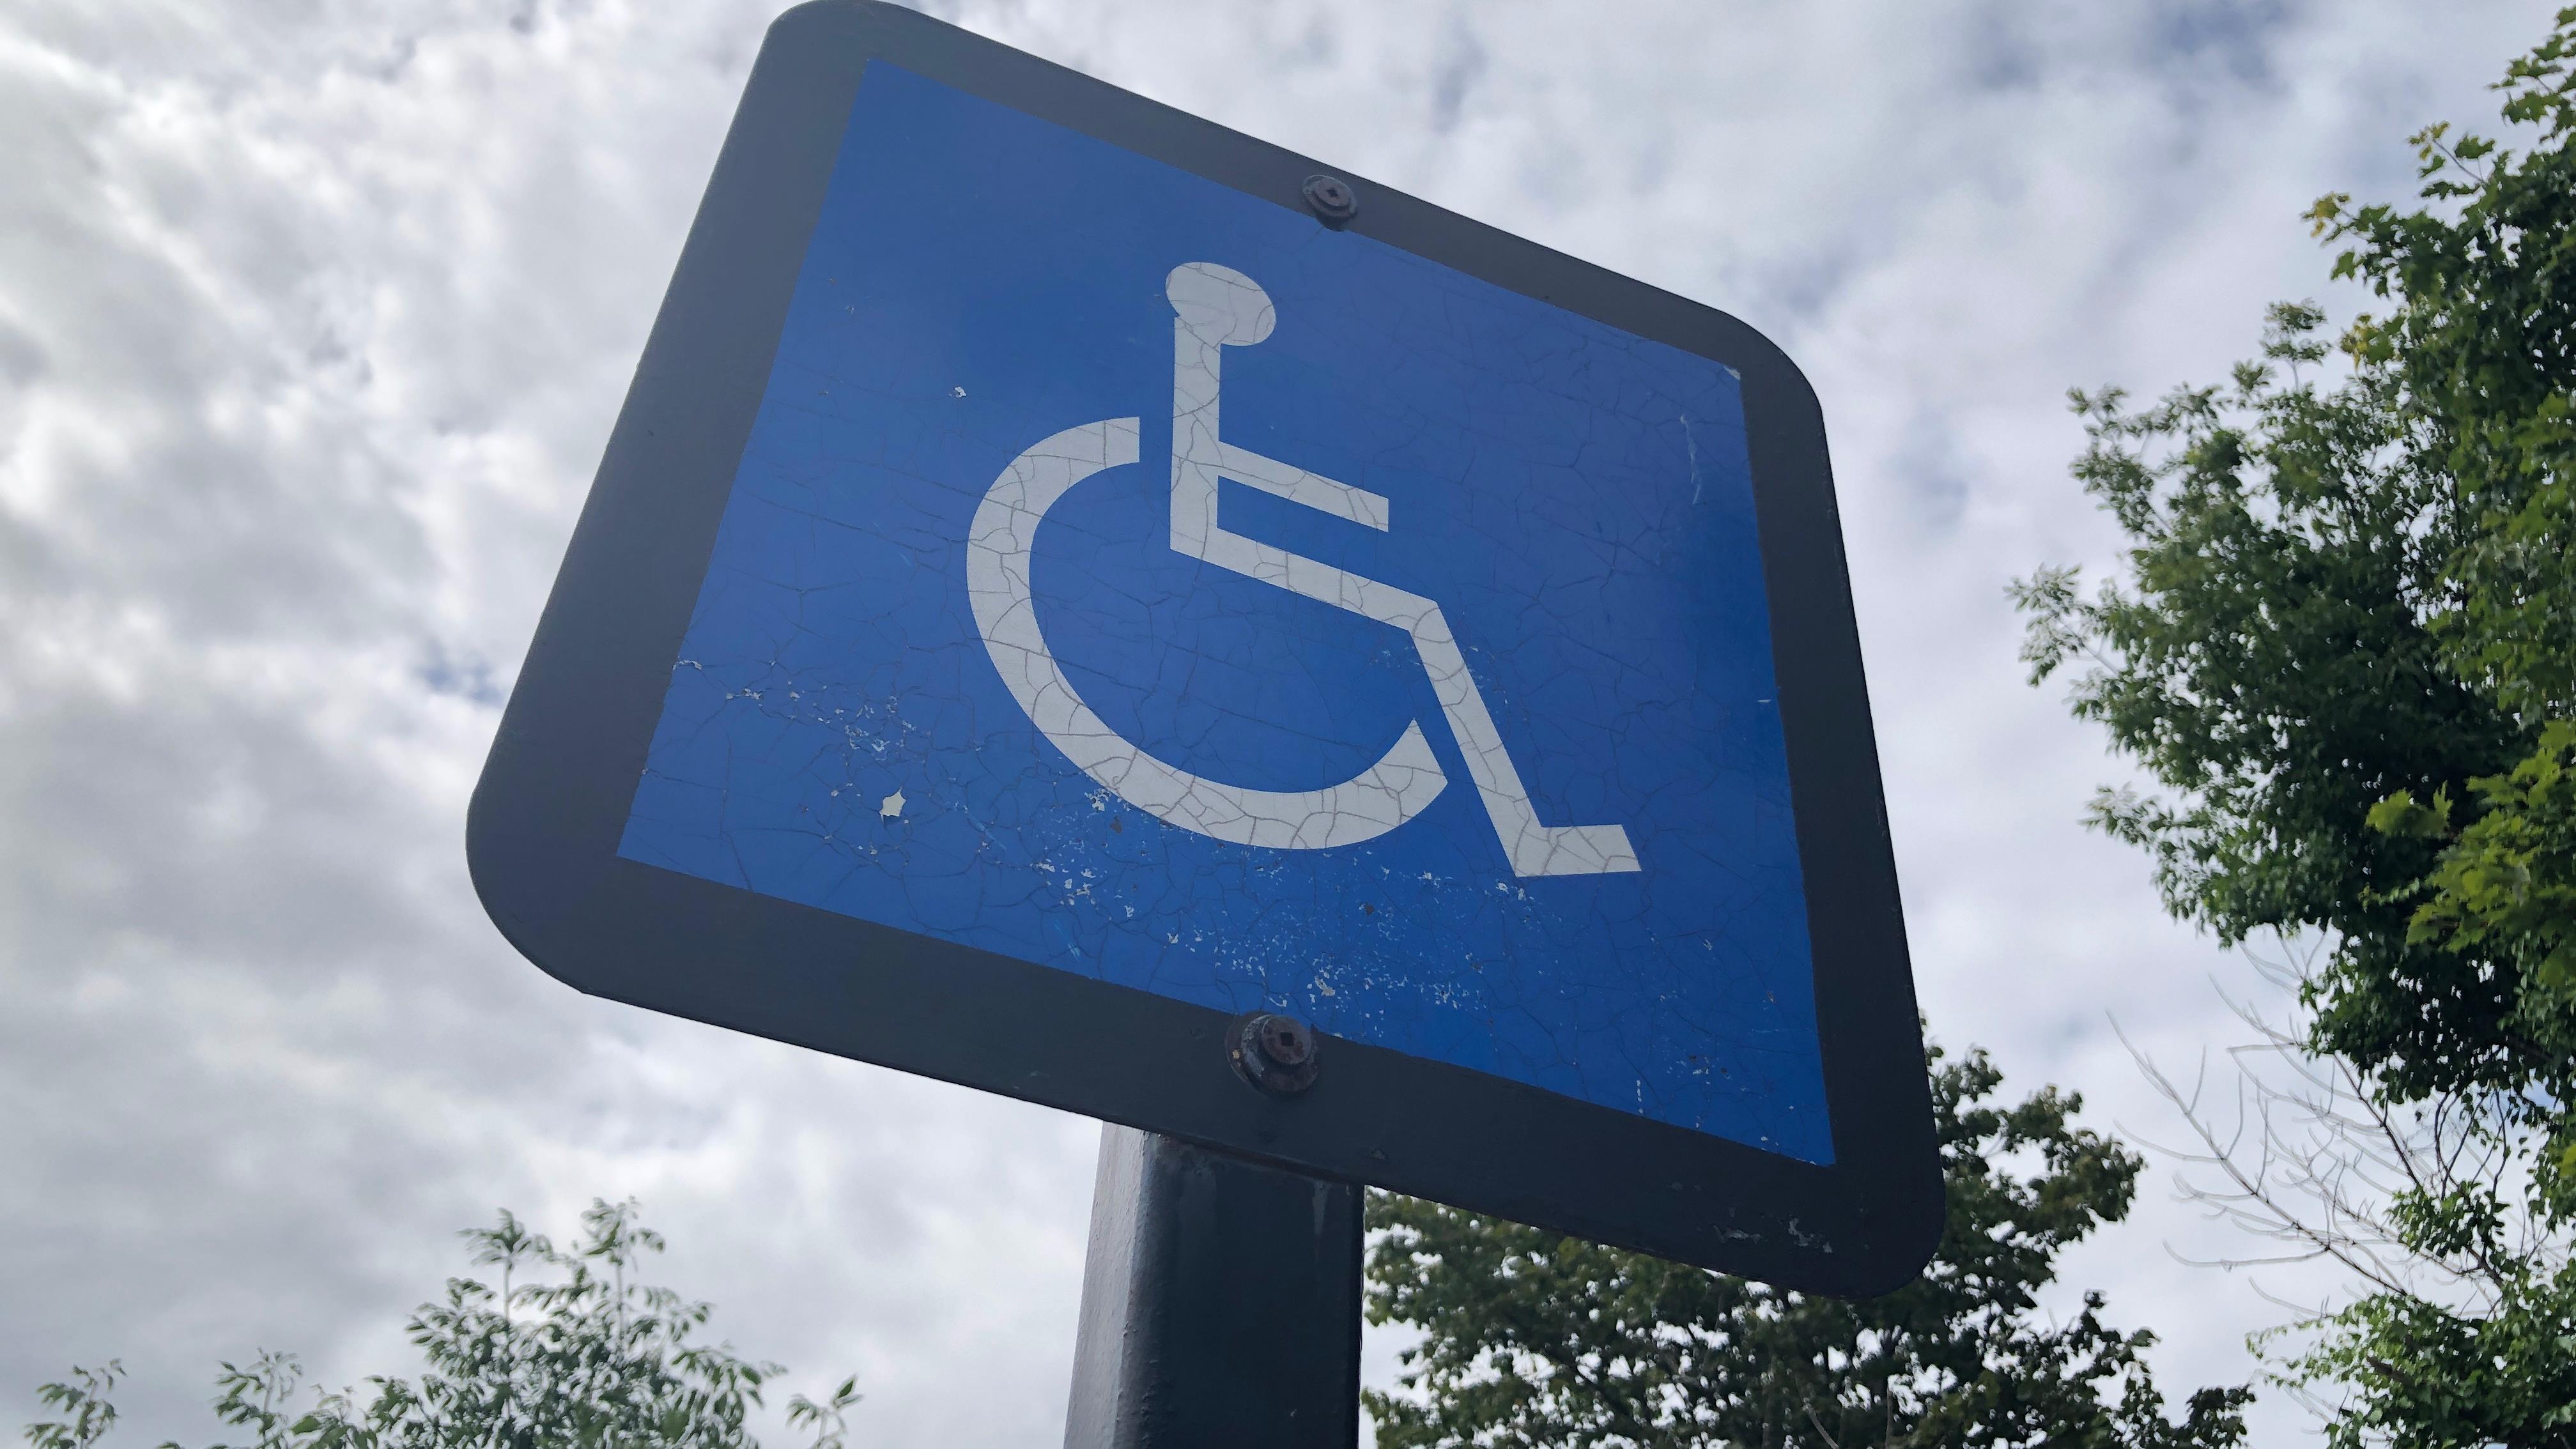 Comprendre l'impact de la nouvelle Prestation canadienne pour les personnes handicapées
Comprendre l'impact de la nouvelle Prestation canadienne pour les personnes handicapées